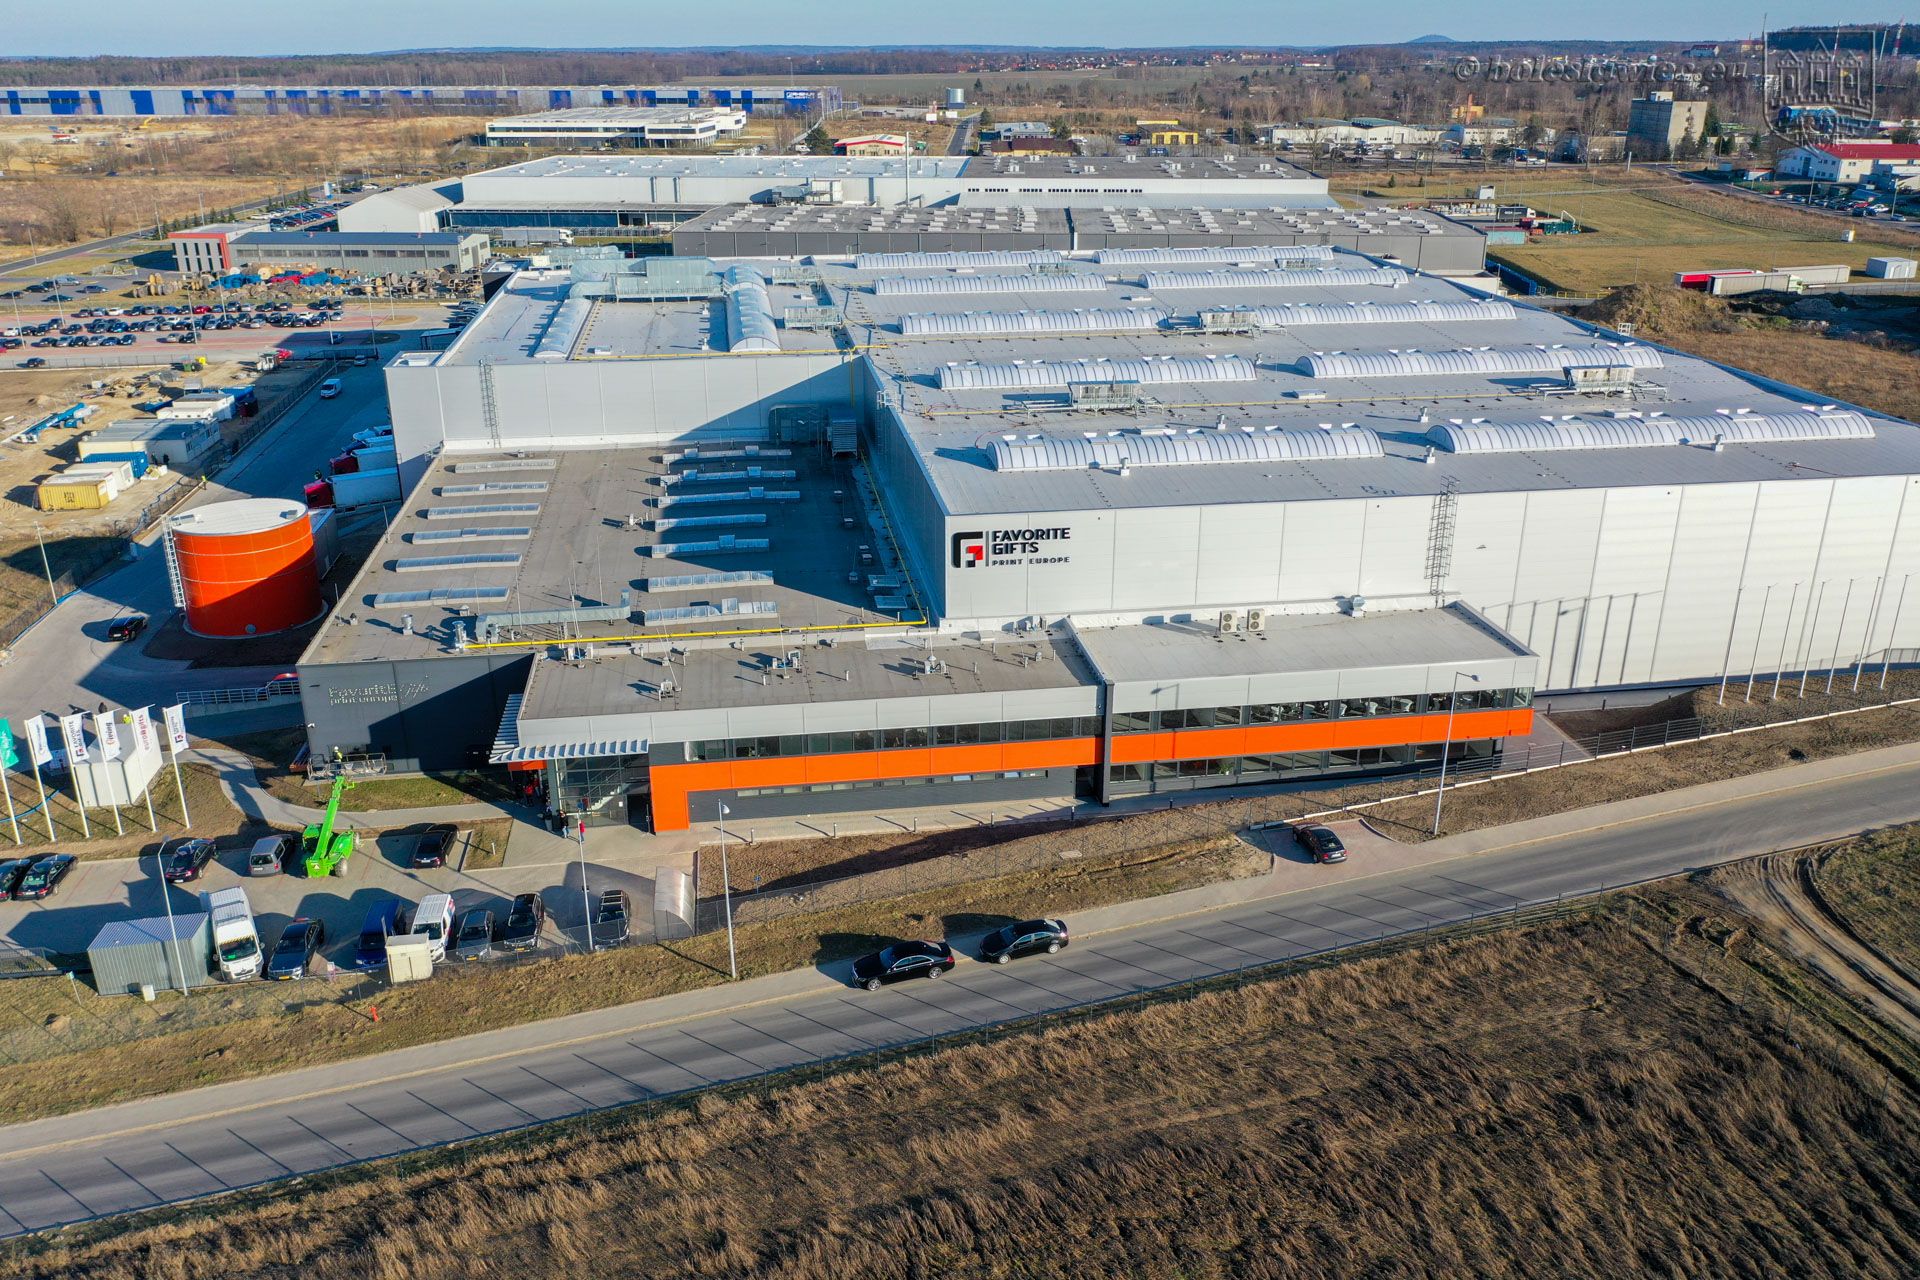 Holenderska firma Favorite Gifts Print Europe zakończyła rozbudowę fabryki w Bolesławcu 